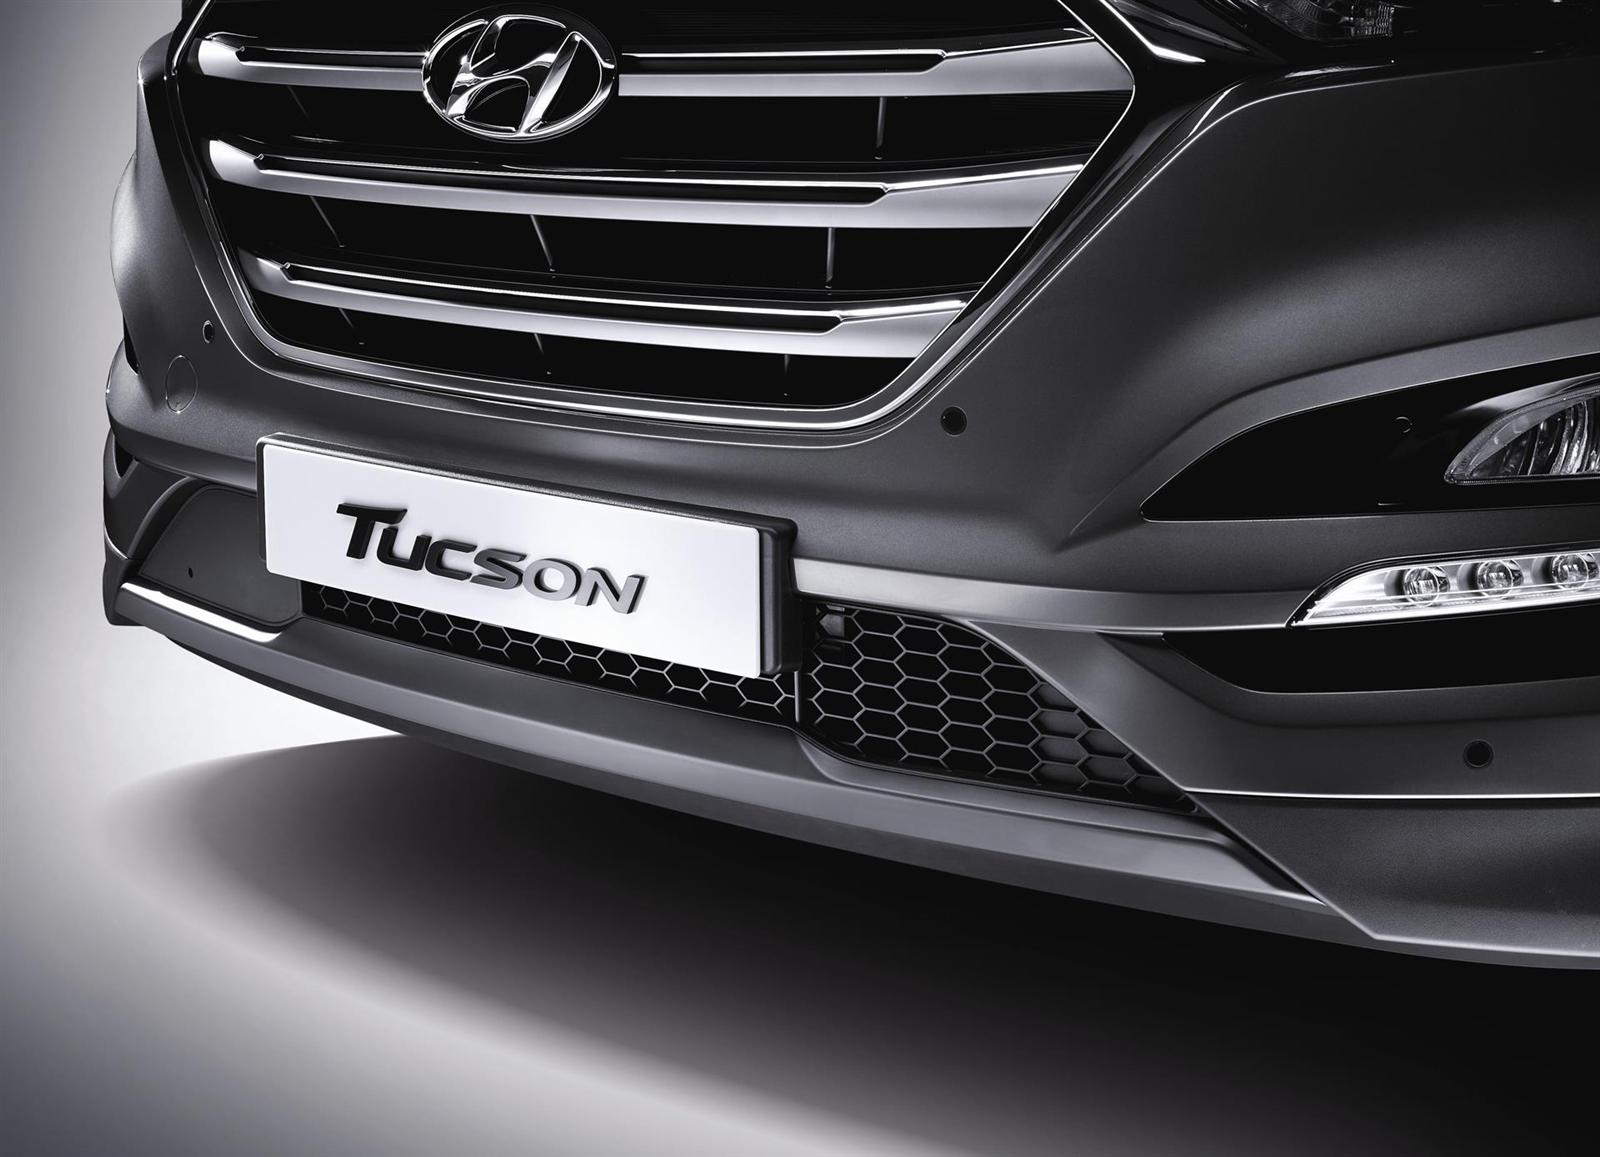 2016 Hyundai Tucson